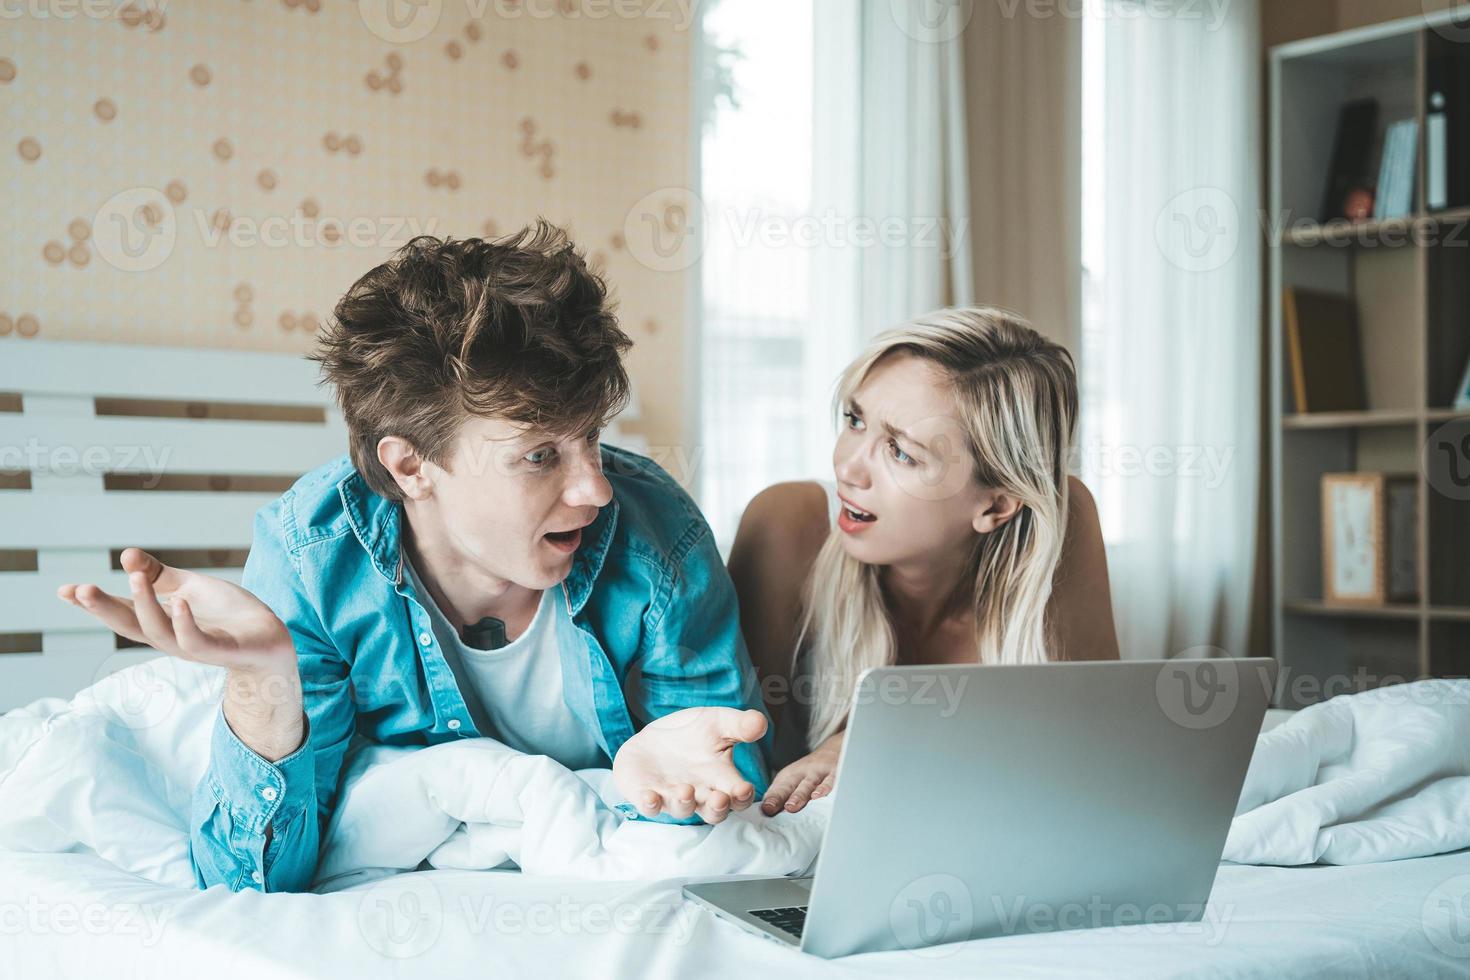 coppia felice utilizzando il computer portatile sul letto foto